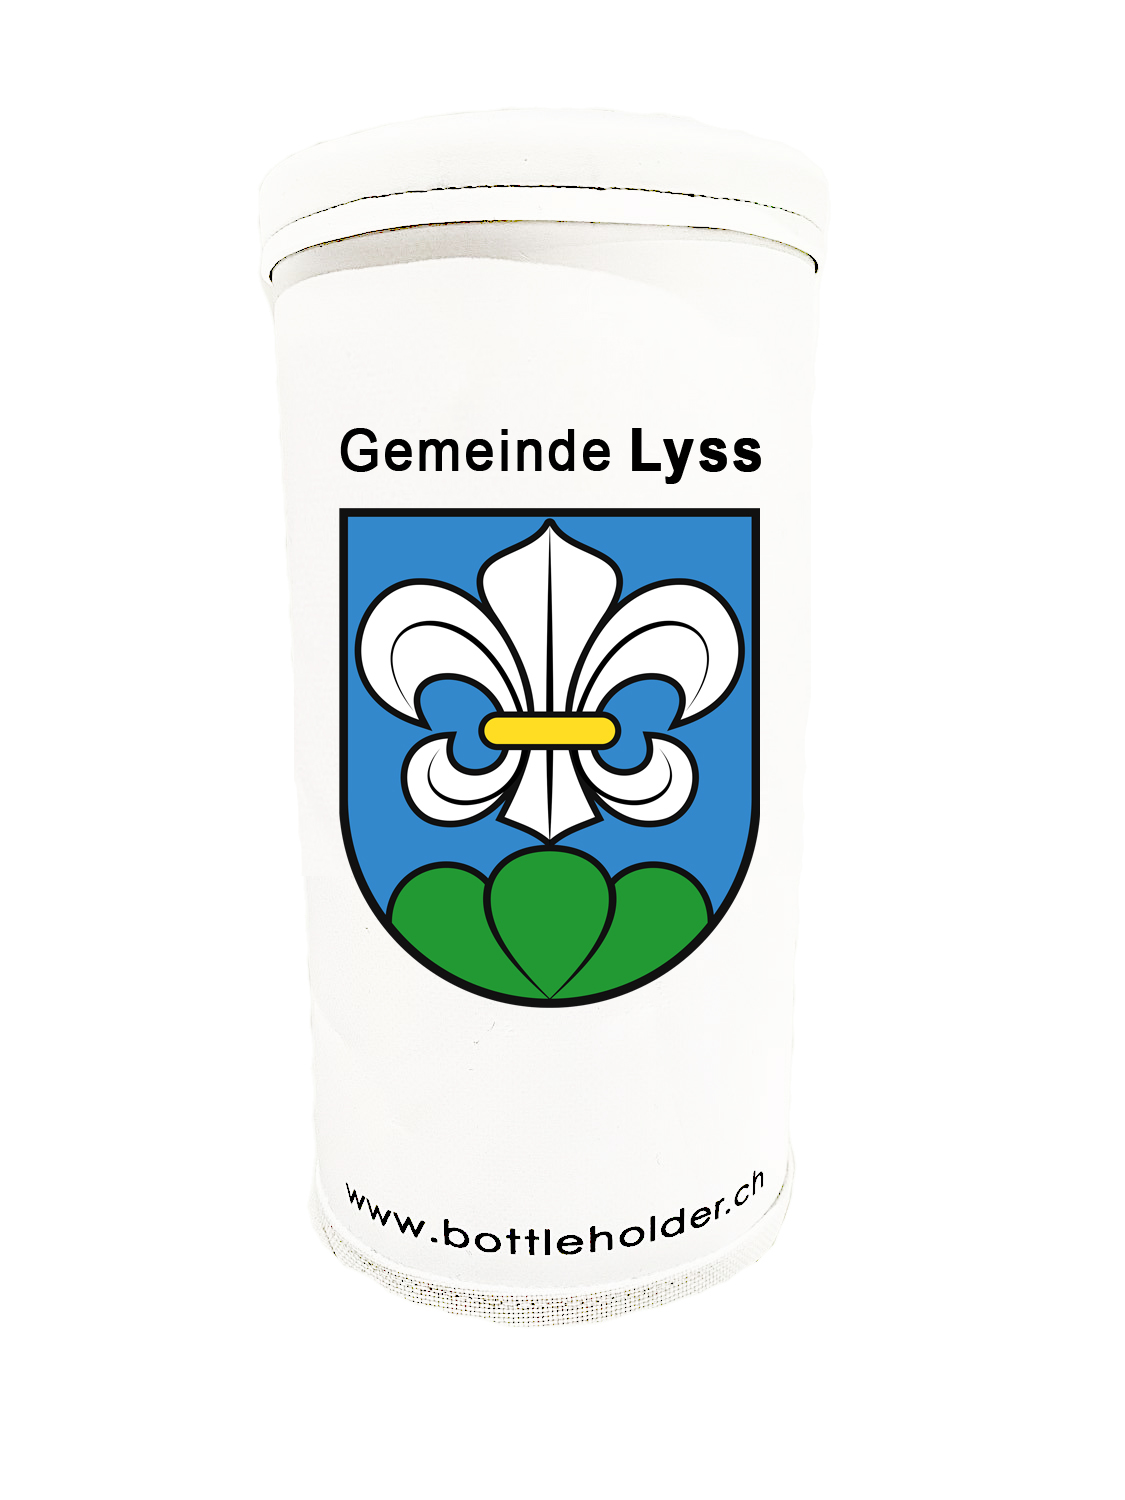 Gemeinde Lyss/SC Lyss Bottleholder